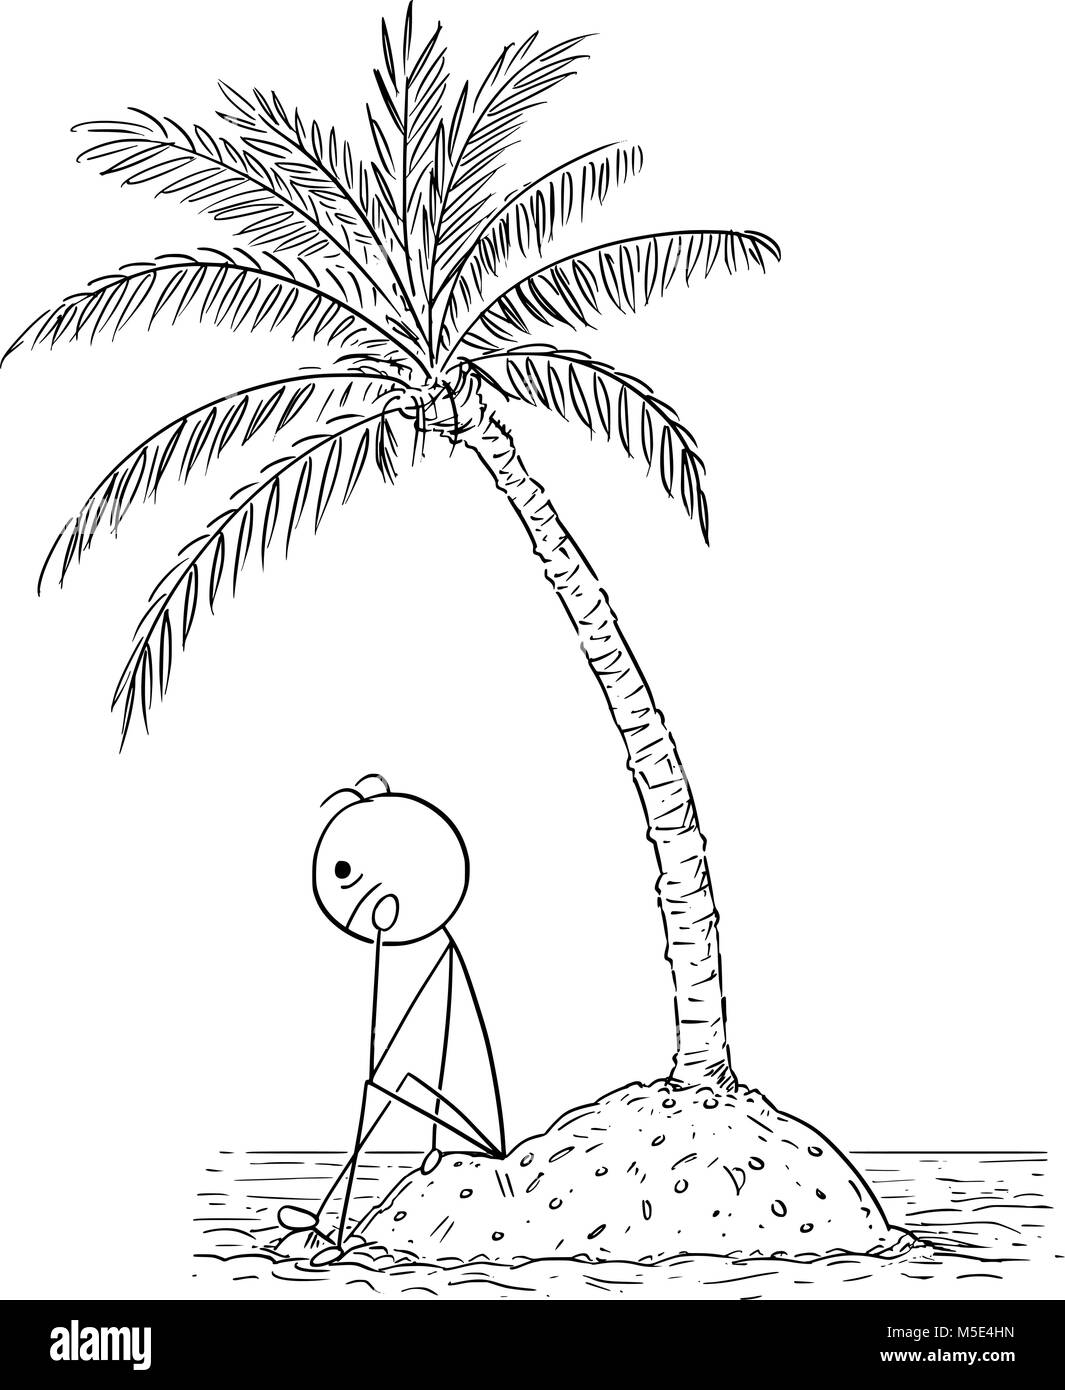 Caricature de l'homme seul ou couple sur les petits États insulaires, dans Palm Tree Illustration de Vecteur